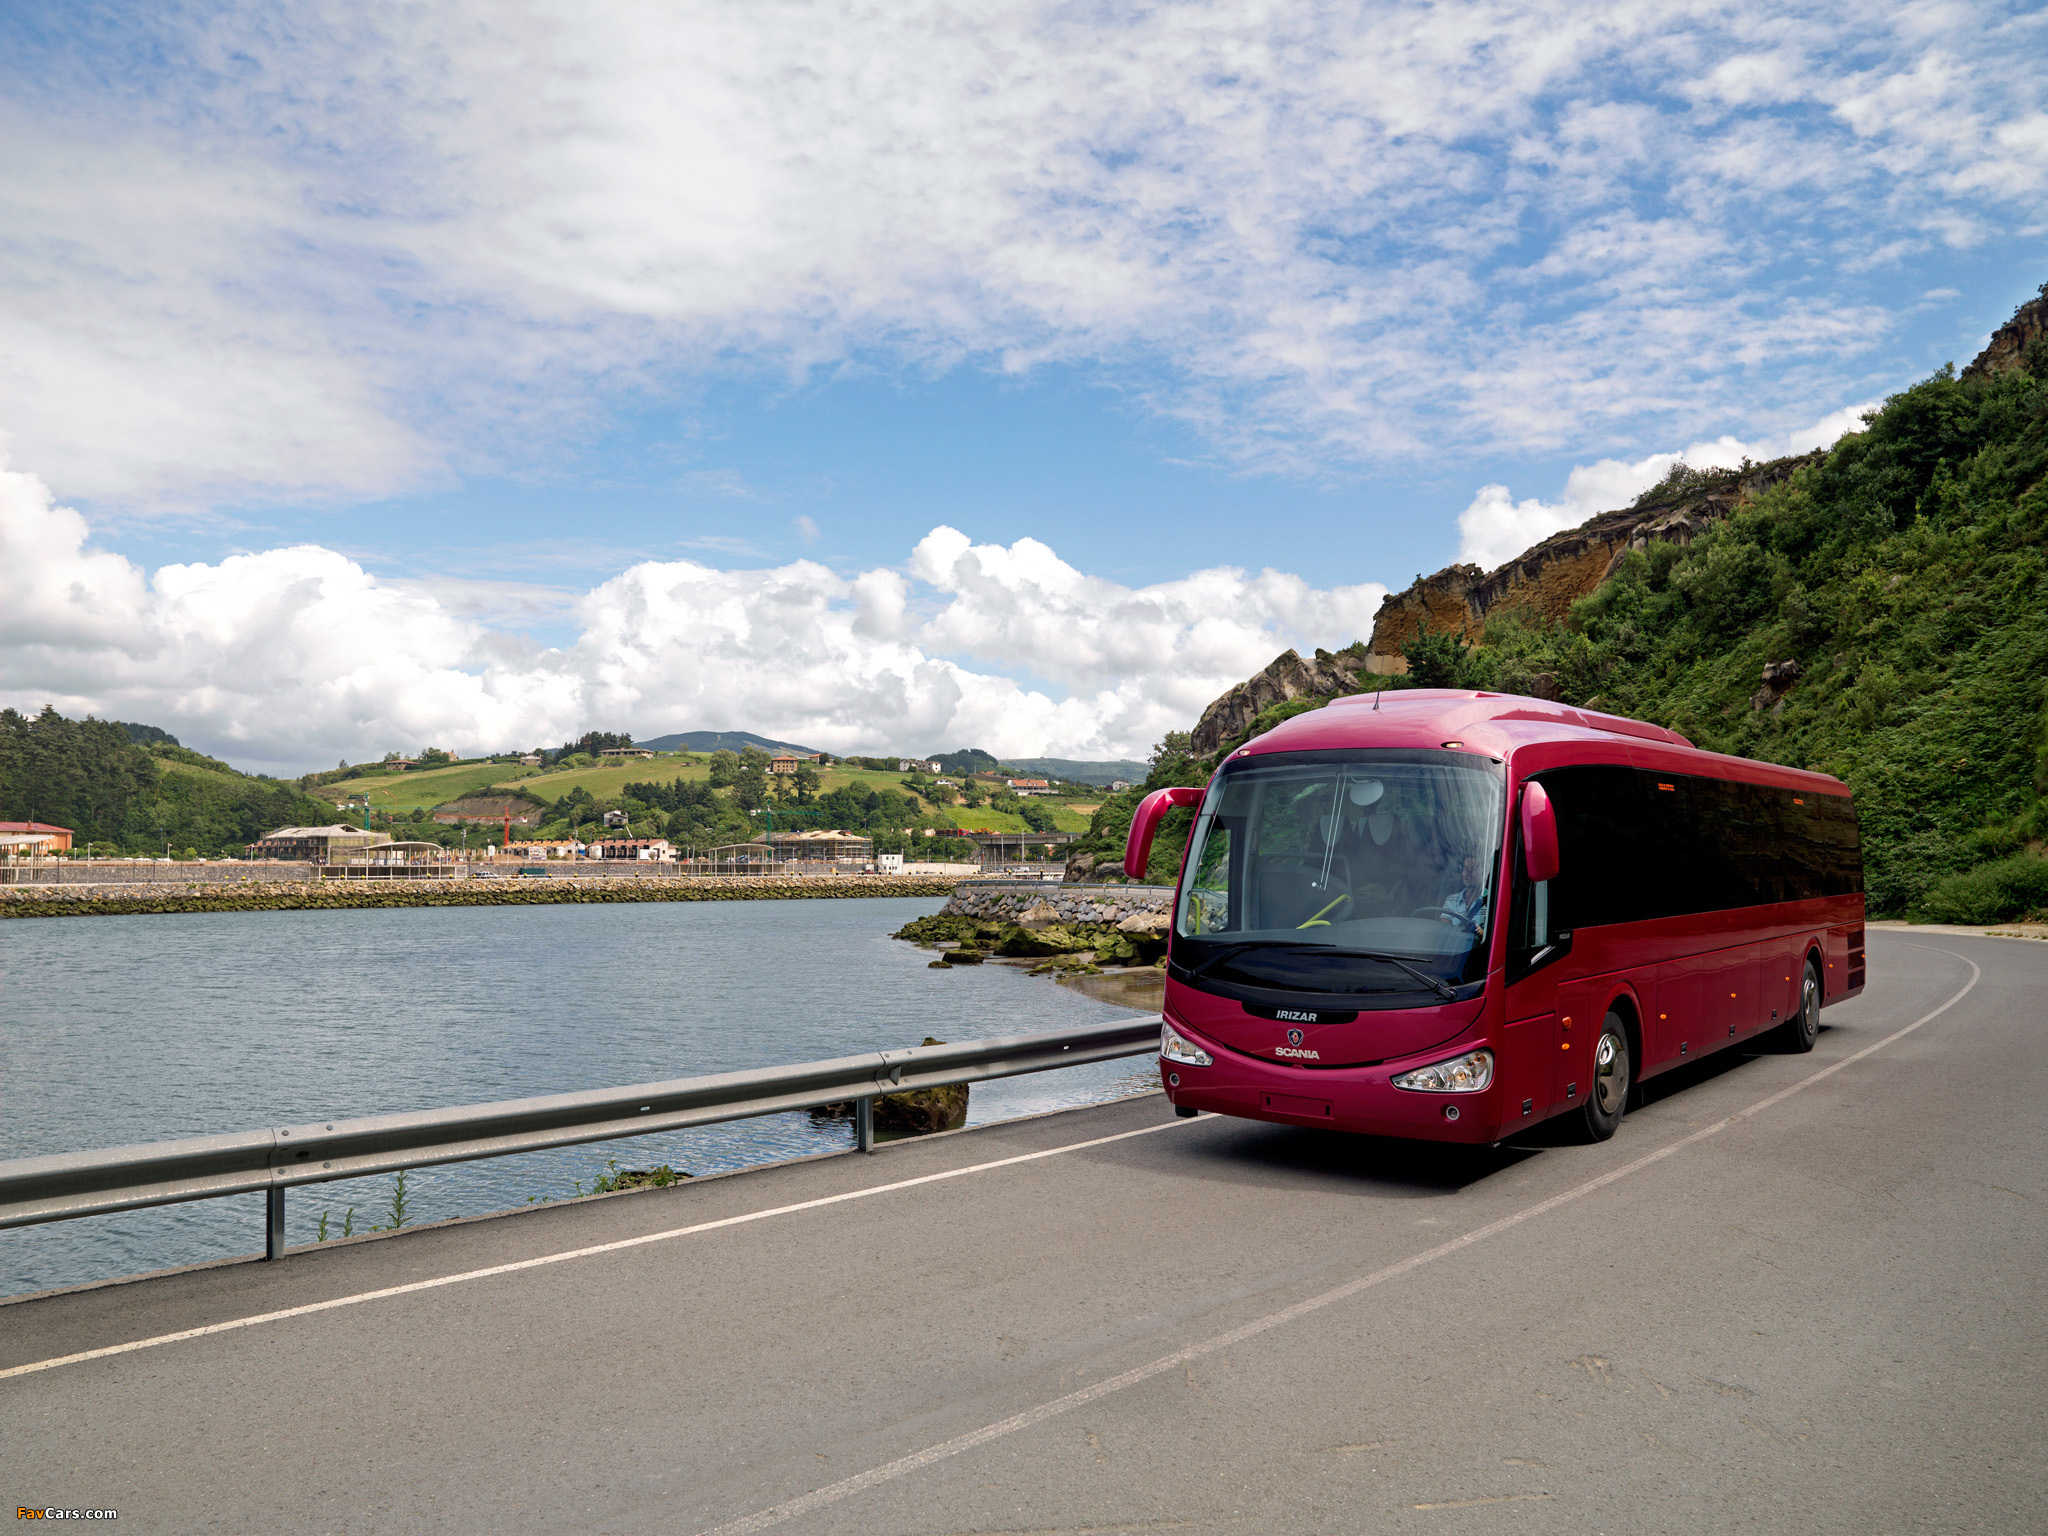 Автобусные туры на выходные. Irizar i4. Irizar i4 автобус. Автобус на море. Красивый автобус.